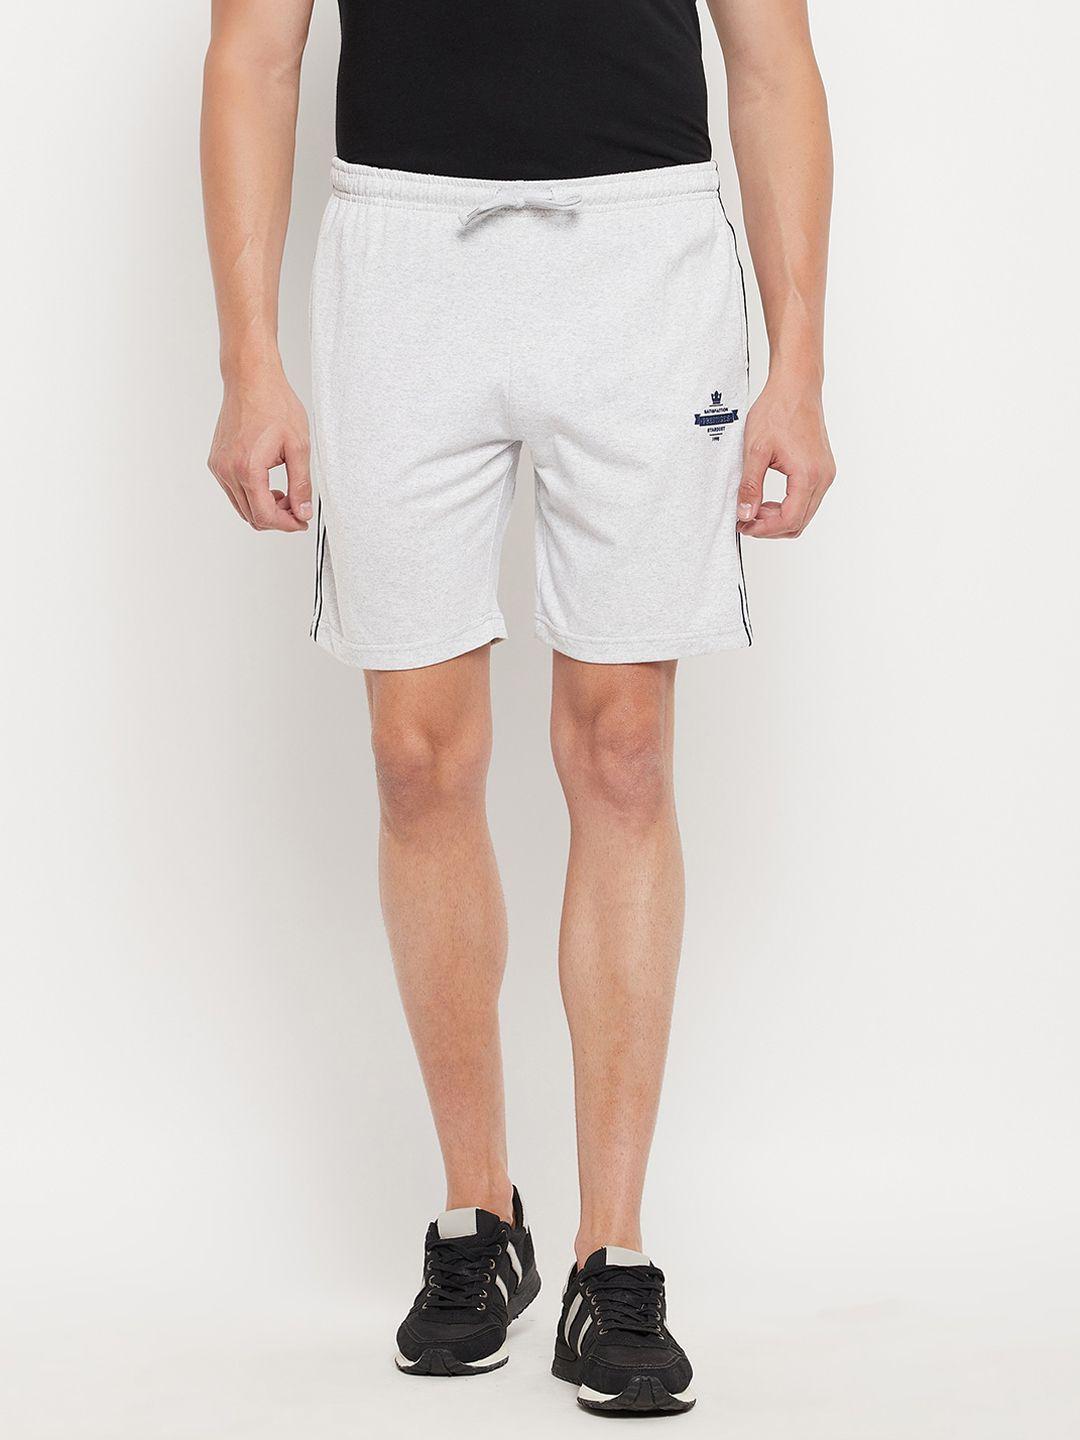 duke-men-white-sports-shorts